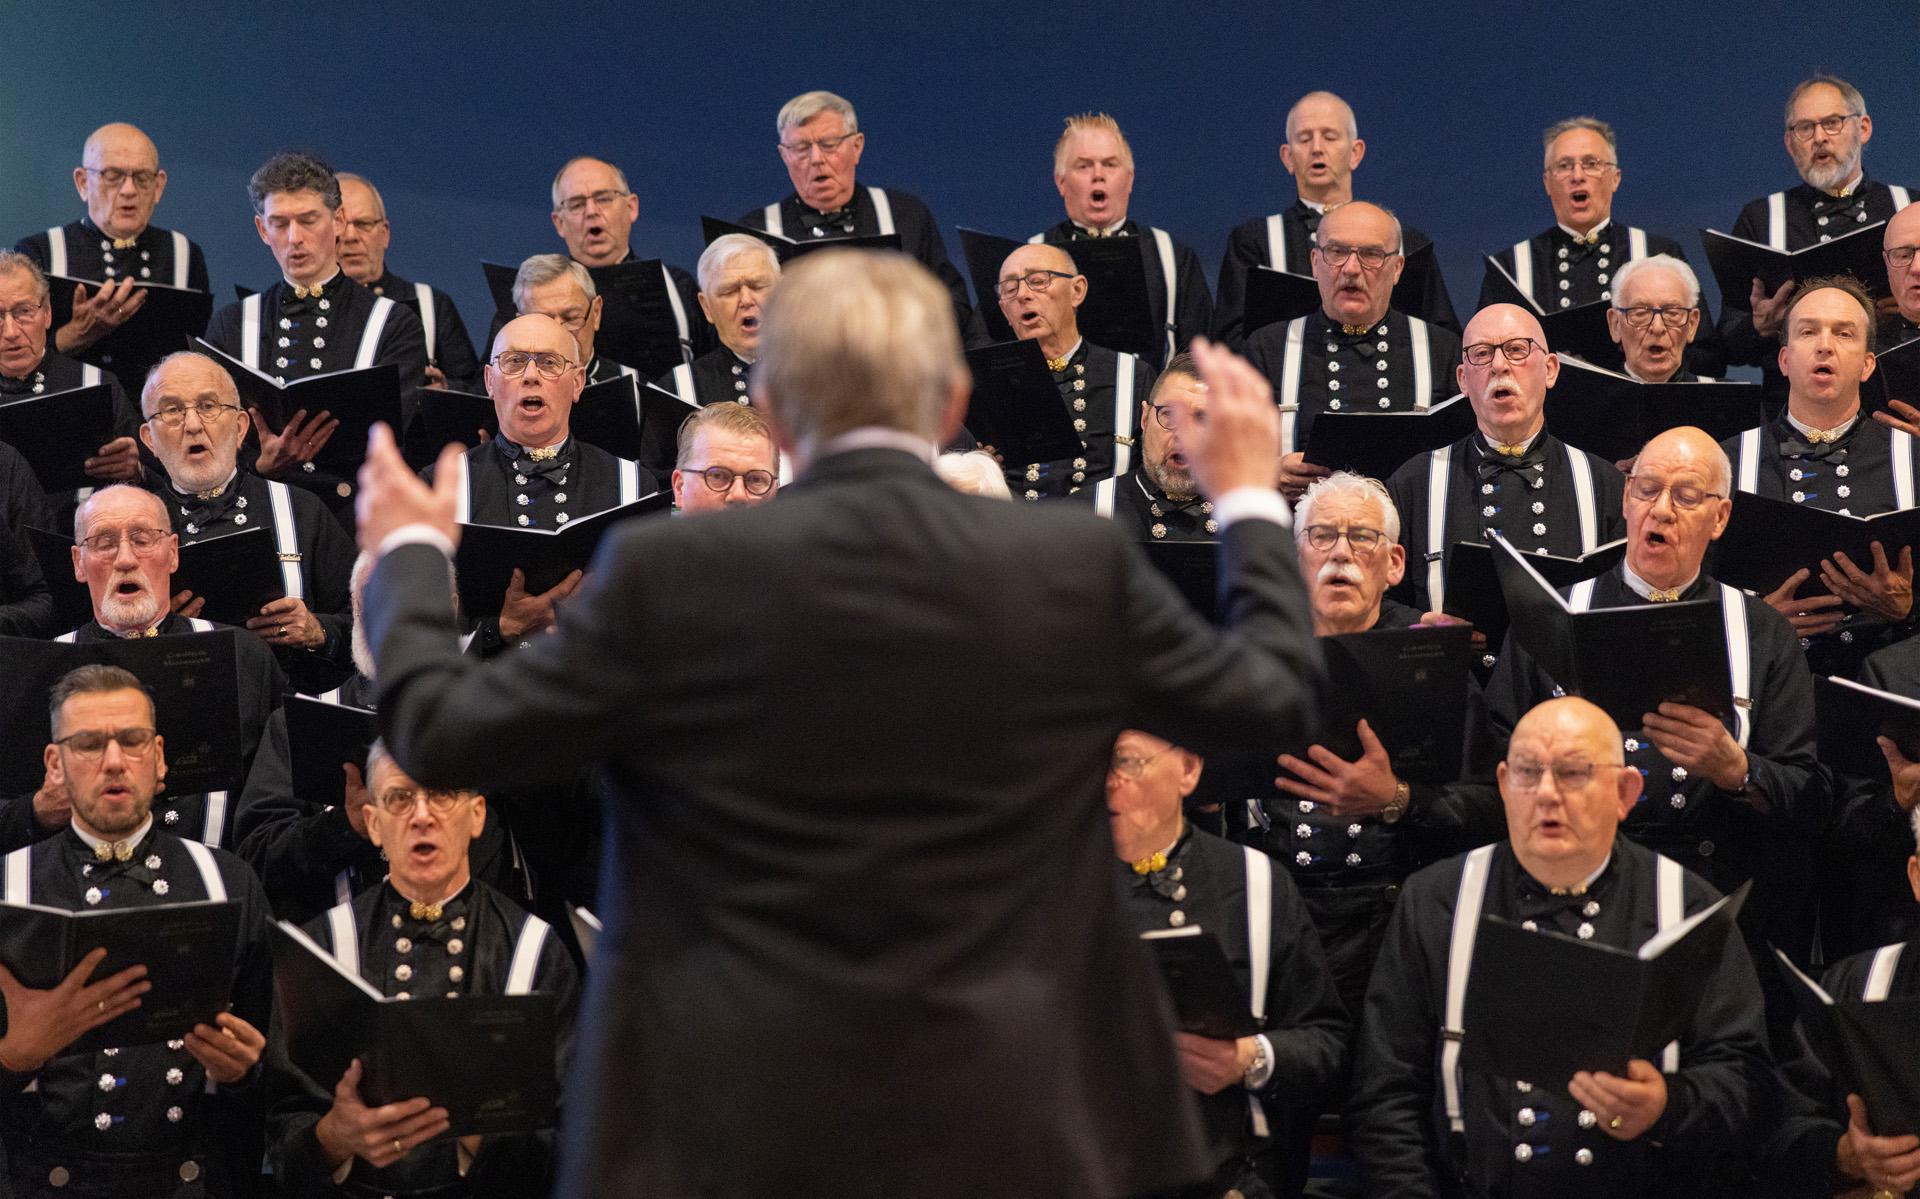 Bracht het mannenkoor vorig jaar het Staphorster volkslied tot leven, dit jaar zal de hymne van het tweelingdorp Rouveen ten gehore worden gebracht. 